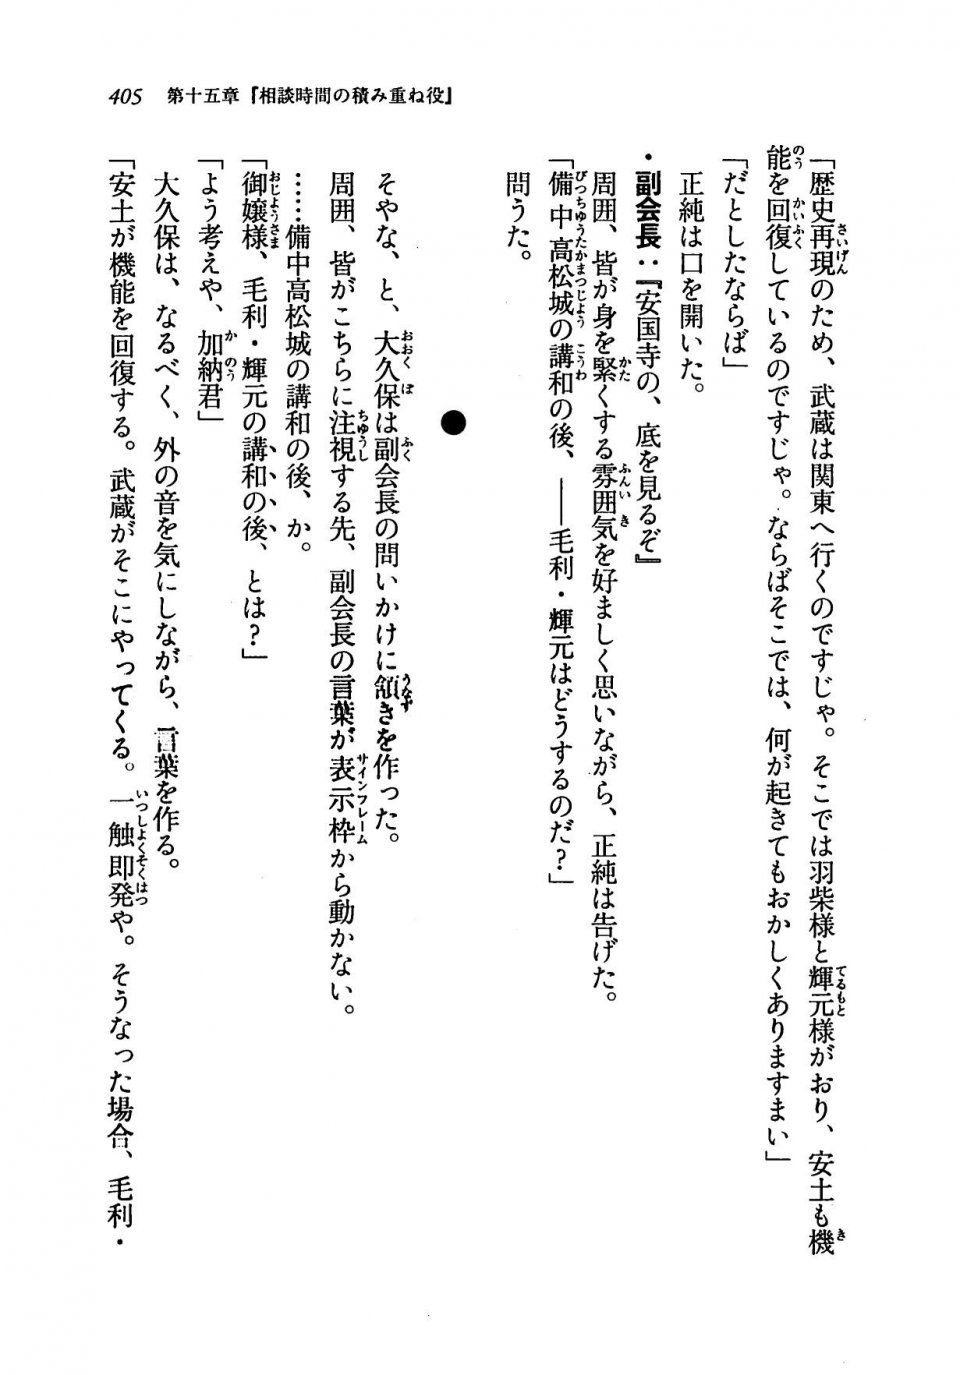 Kyoukai Senjou no Horizon LN Vol 19(8A) - Photo #405